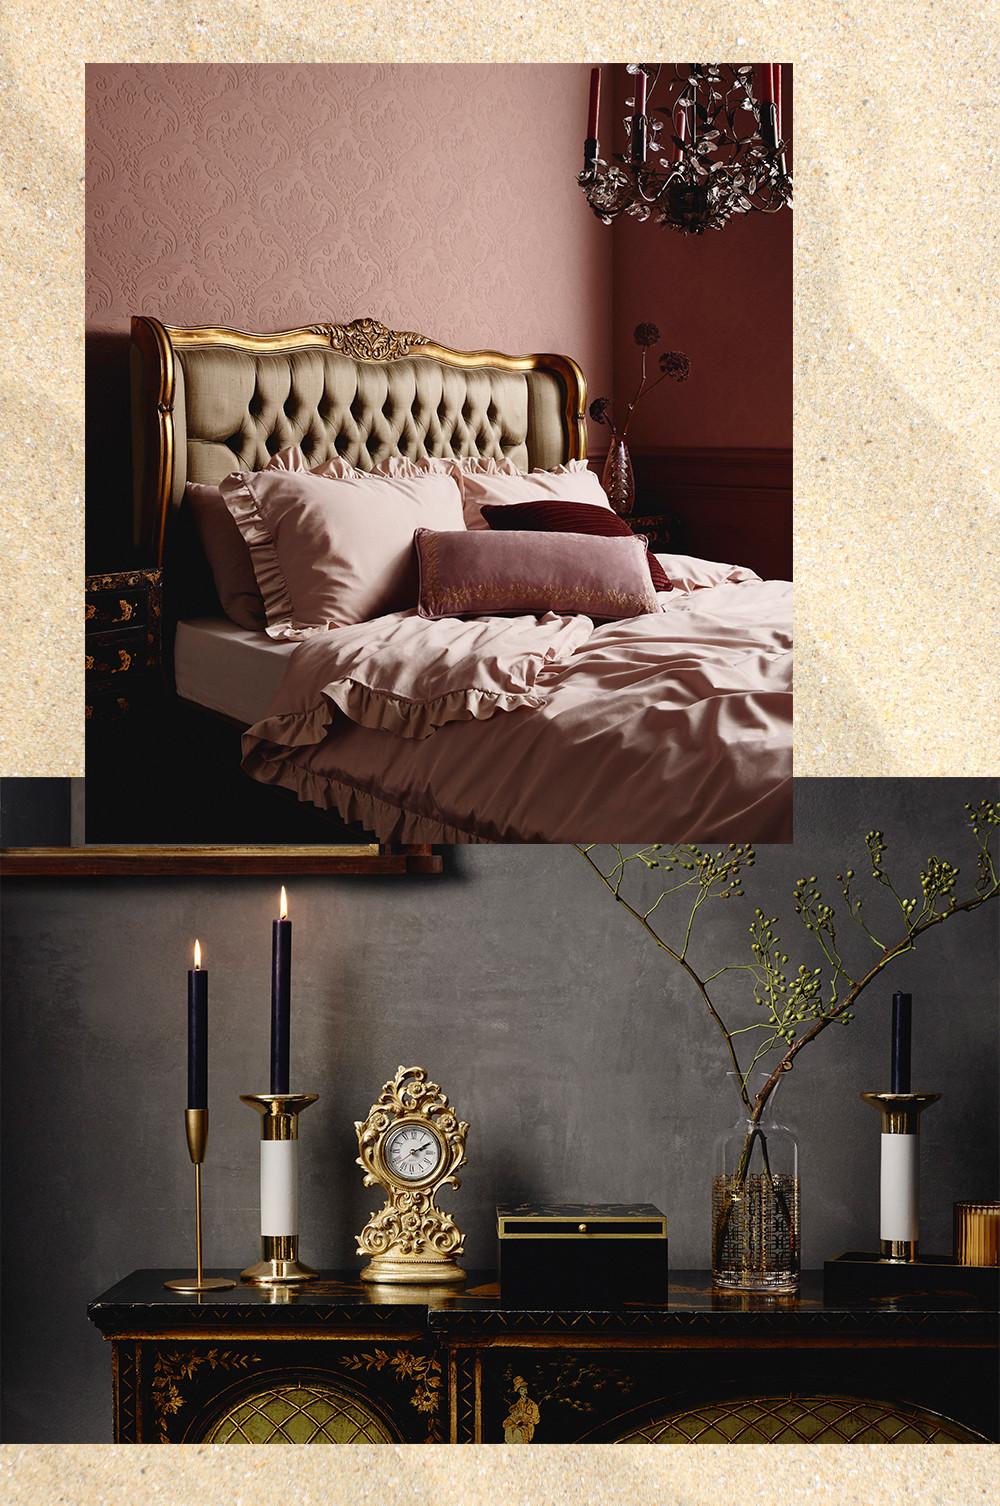 Luxuriöses Schlafzimmer, rosafarbene Bettwäsche, Kerzen und goldfarbene Accessoires